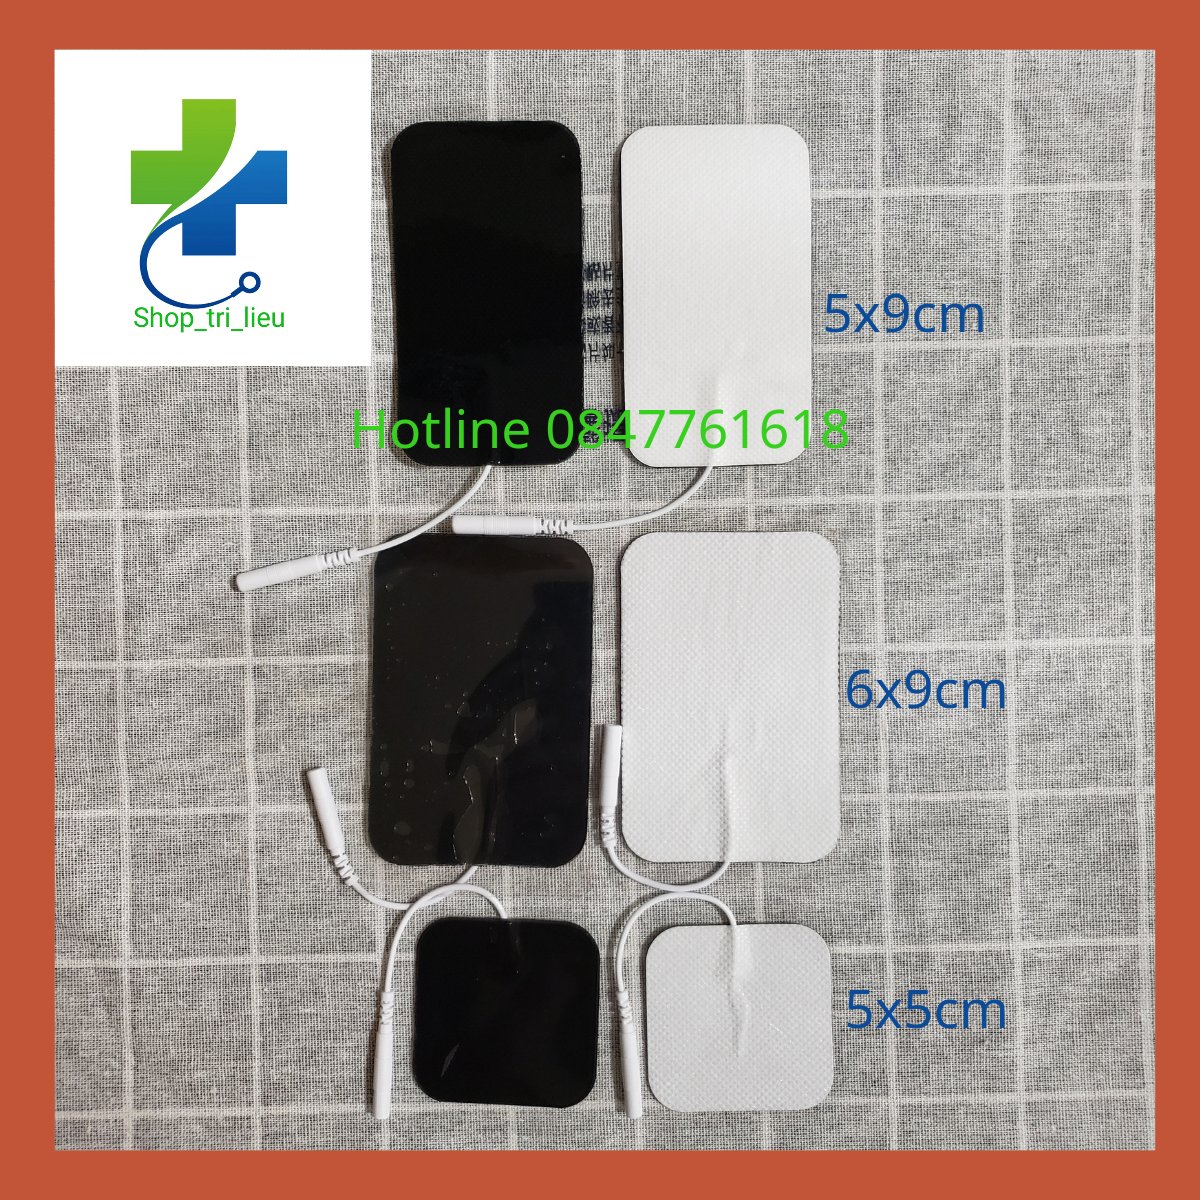 Miếng dán xung điện massage 5x5cm 5x9cm 6x9cm dùng cho máy vật lý trị liệu